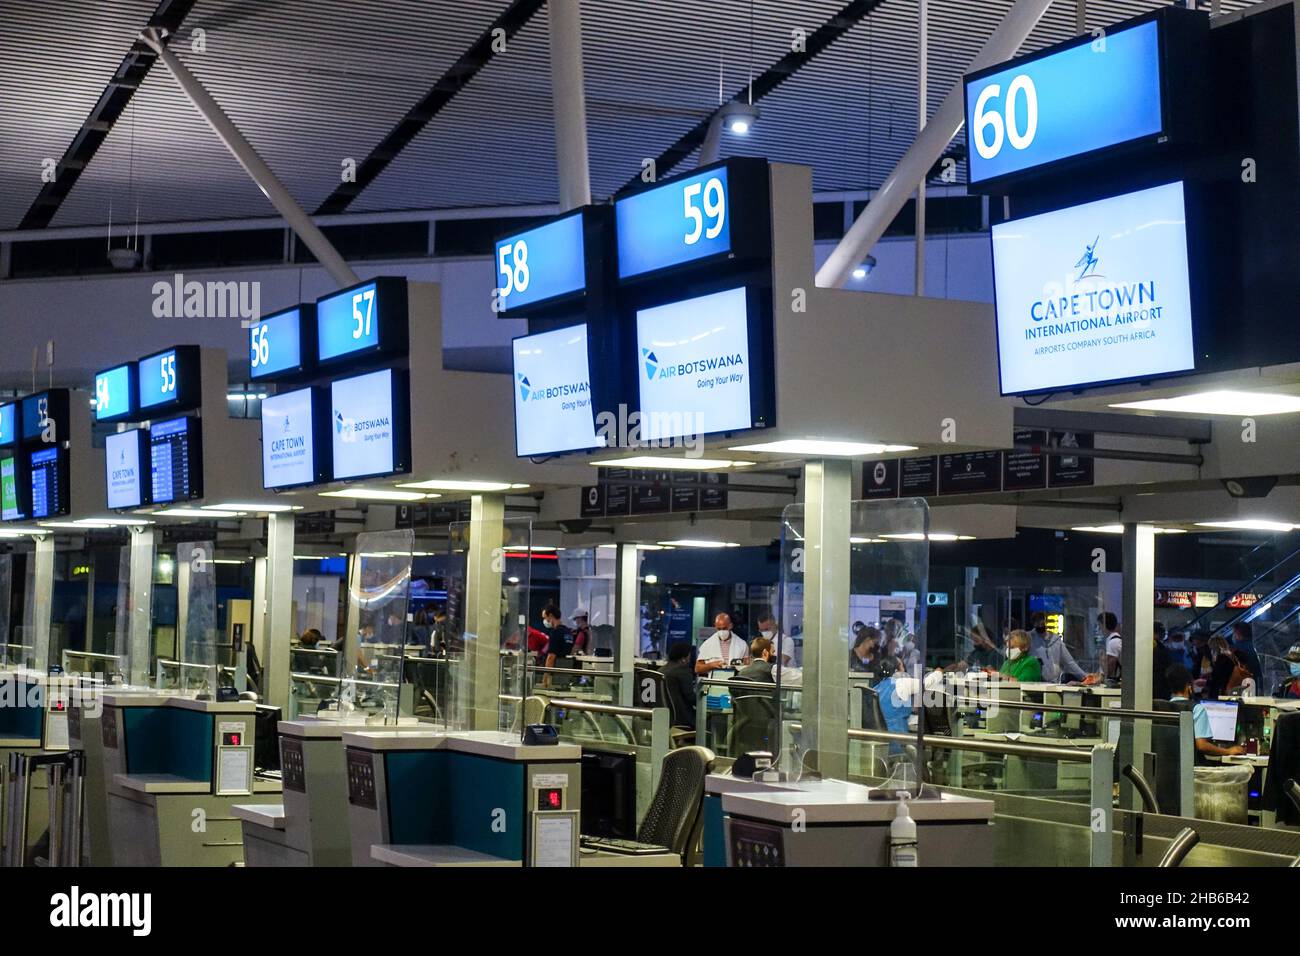 Aeroporto Internazionale di Città del Capo, Sudafrica. 8th dicembre 2021. I passeggeri tornano in Europa con l'attenzione alla nuova variante COVID Omicron. Foto Stock